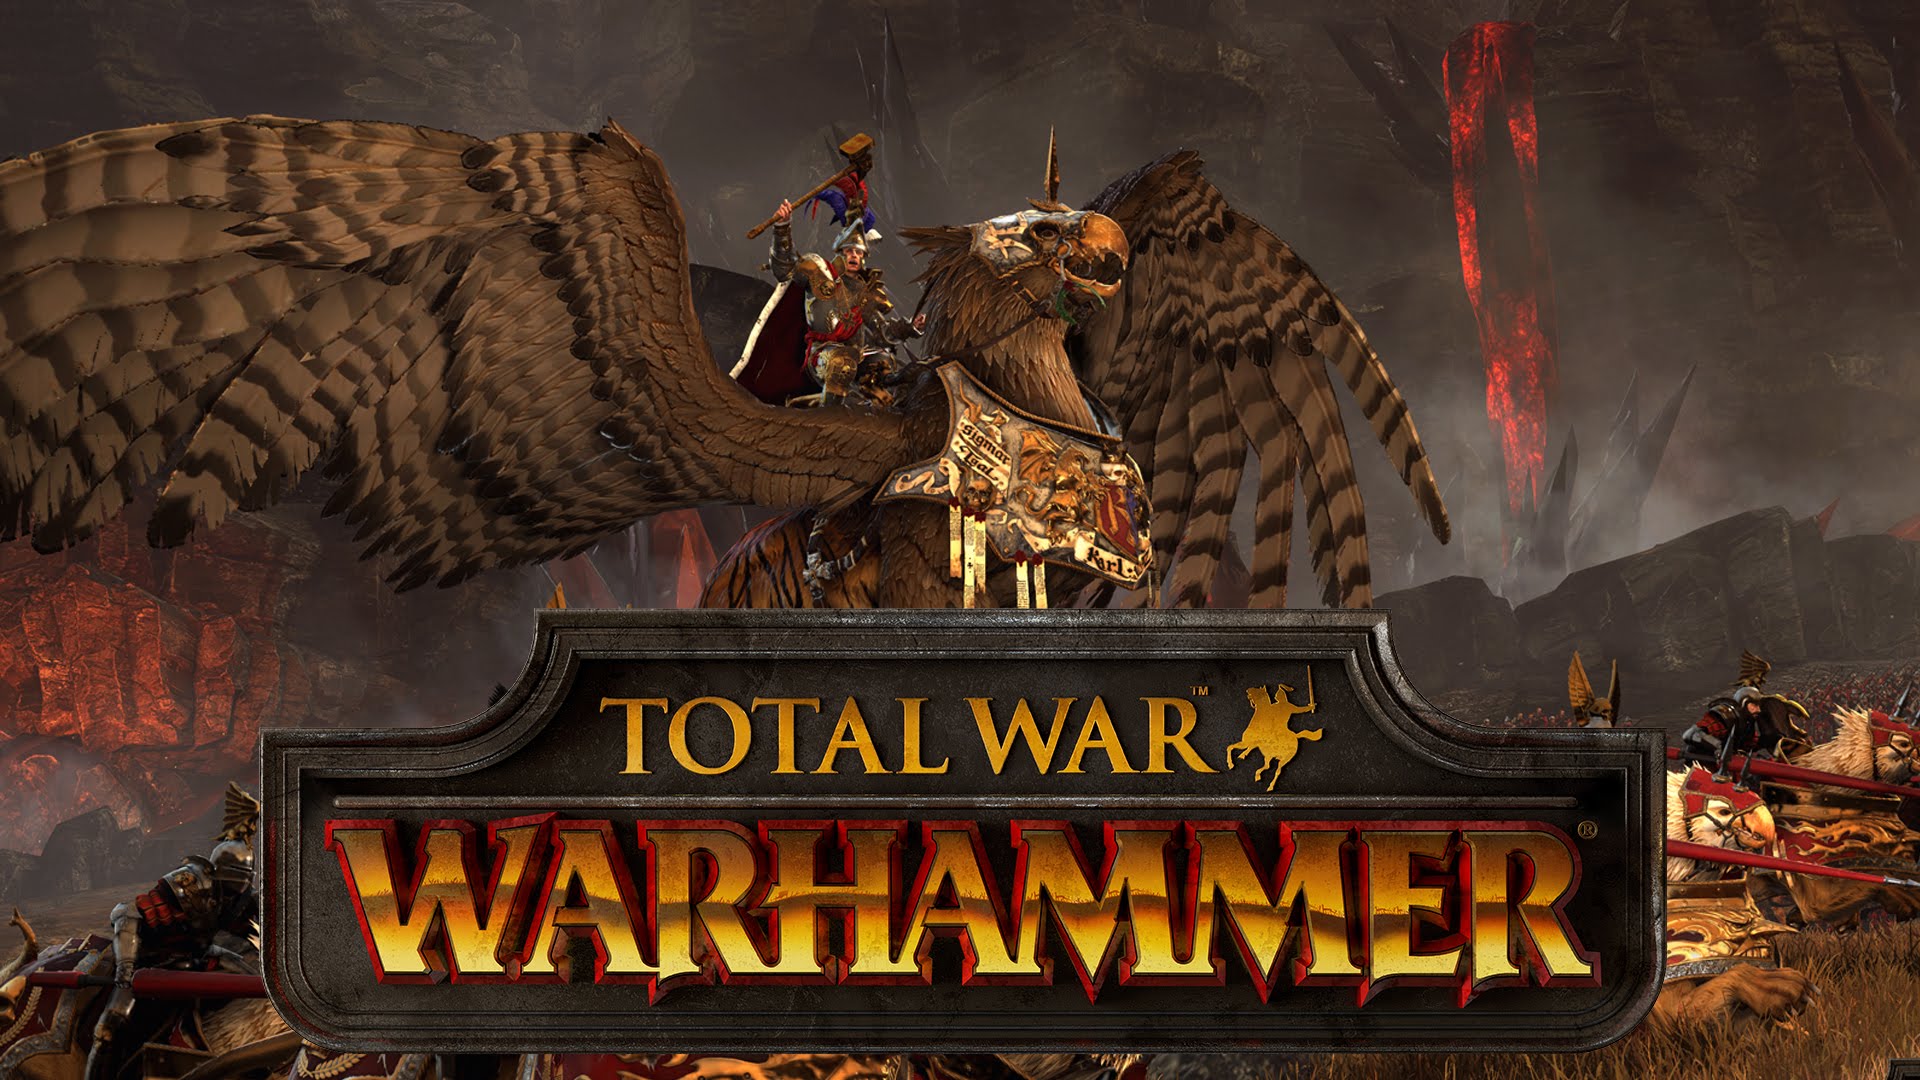 warhammer total war wallpaper,action adventure spiel,computerspiel,spiele,bildschirmfoto,erfundener charakter